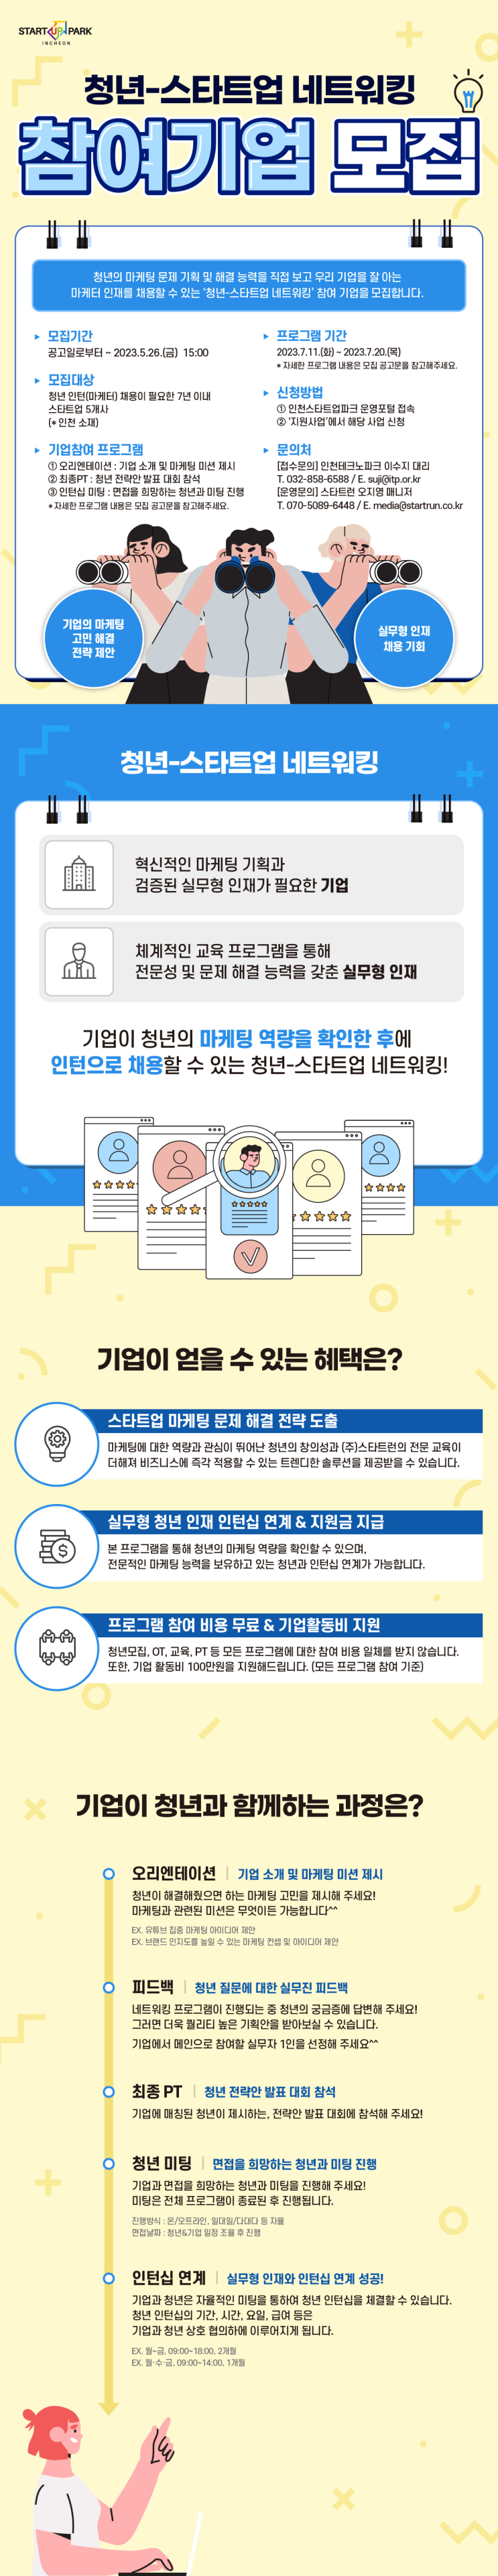 [지원사업] 「청년 스타트업 네트워킹 프로그램」참여 기업 모집 공고_인천